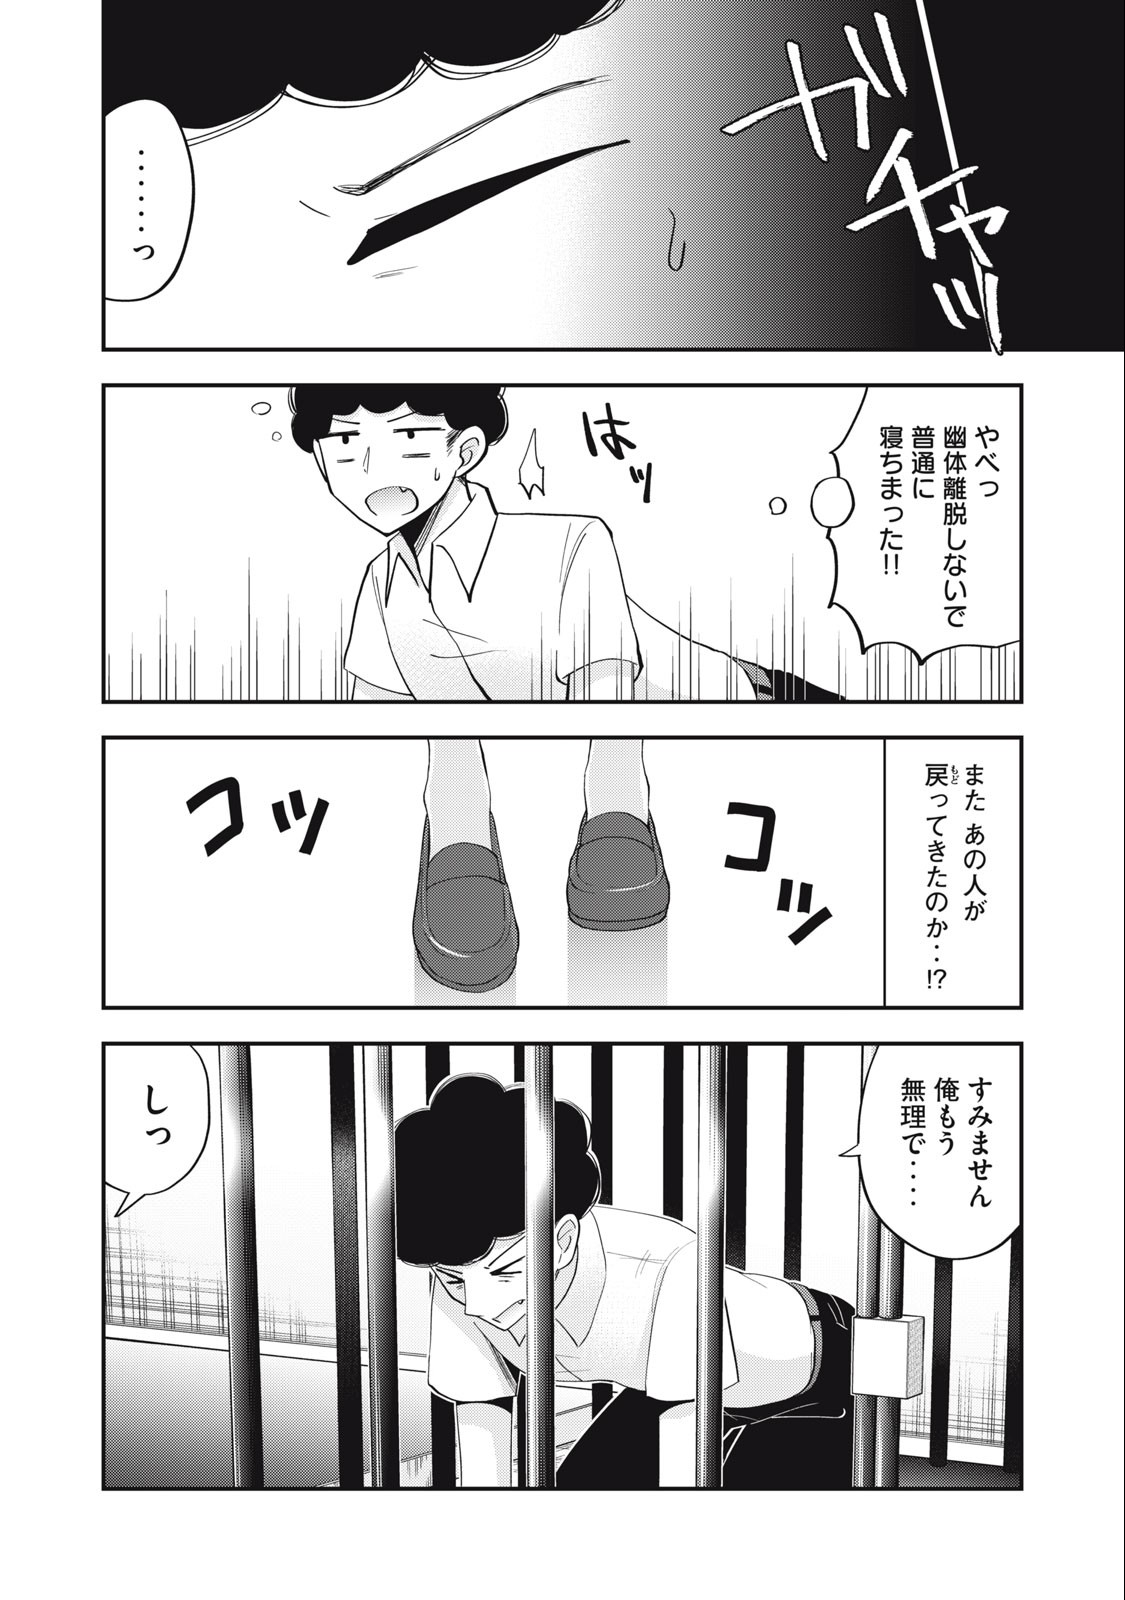 Yumeutsutsu no Hana no Sono - Chapter 11 - Page 2